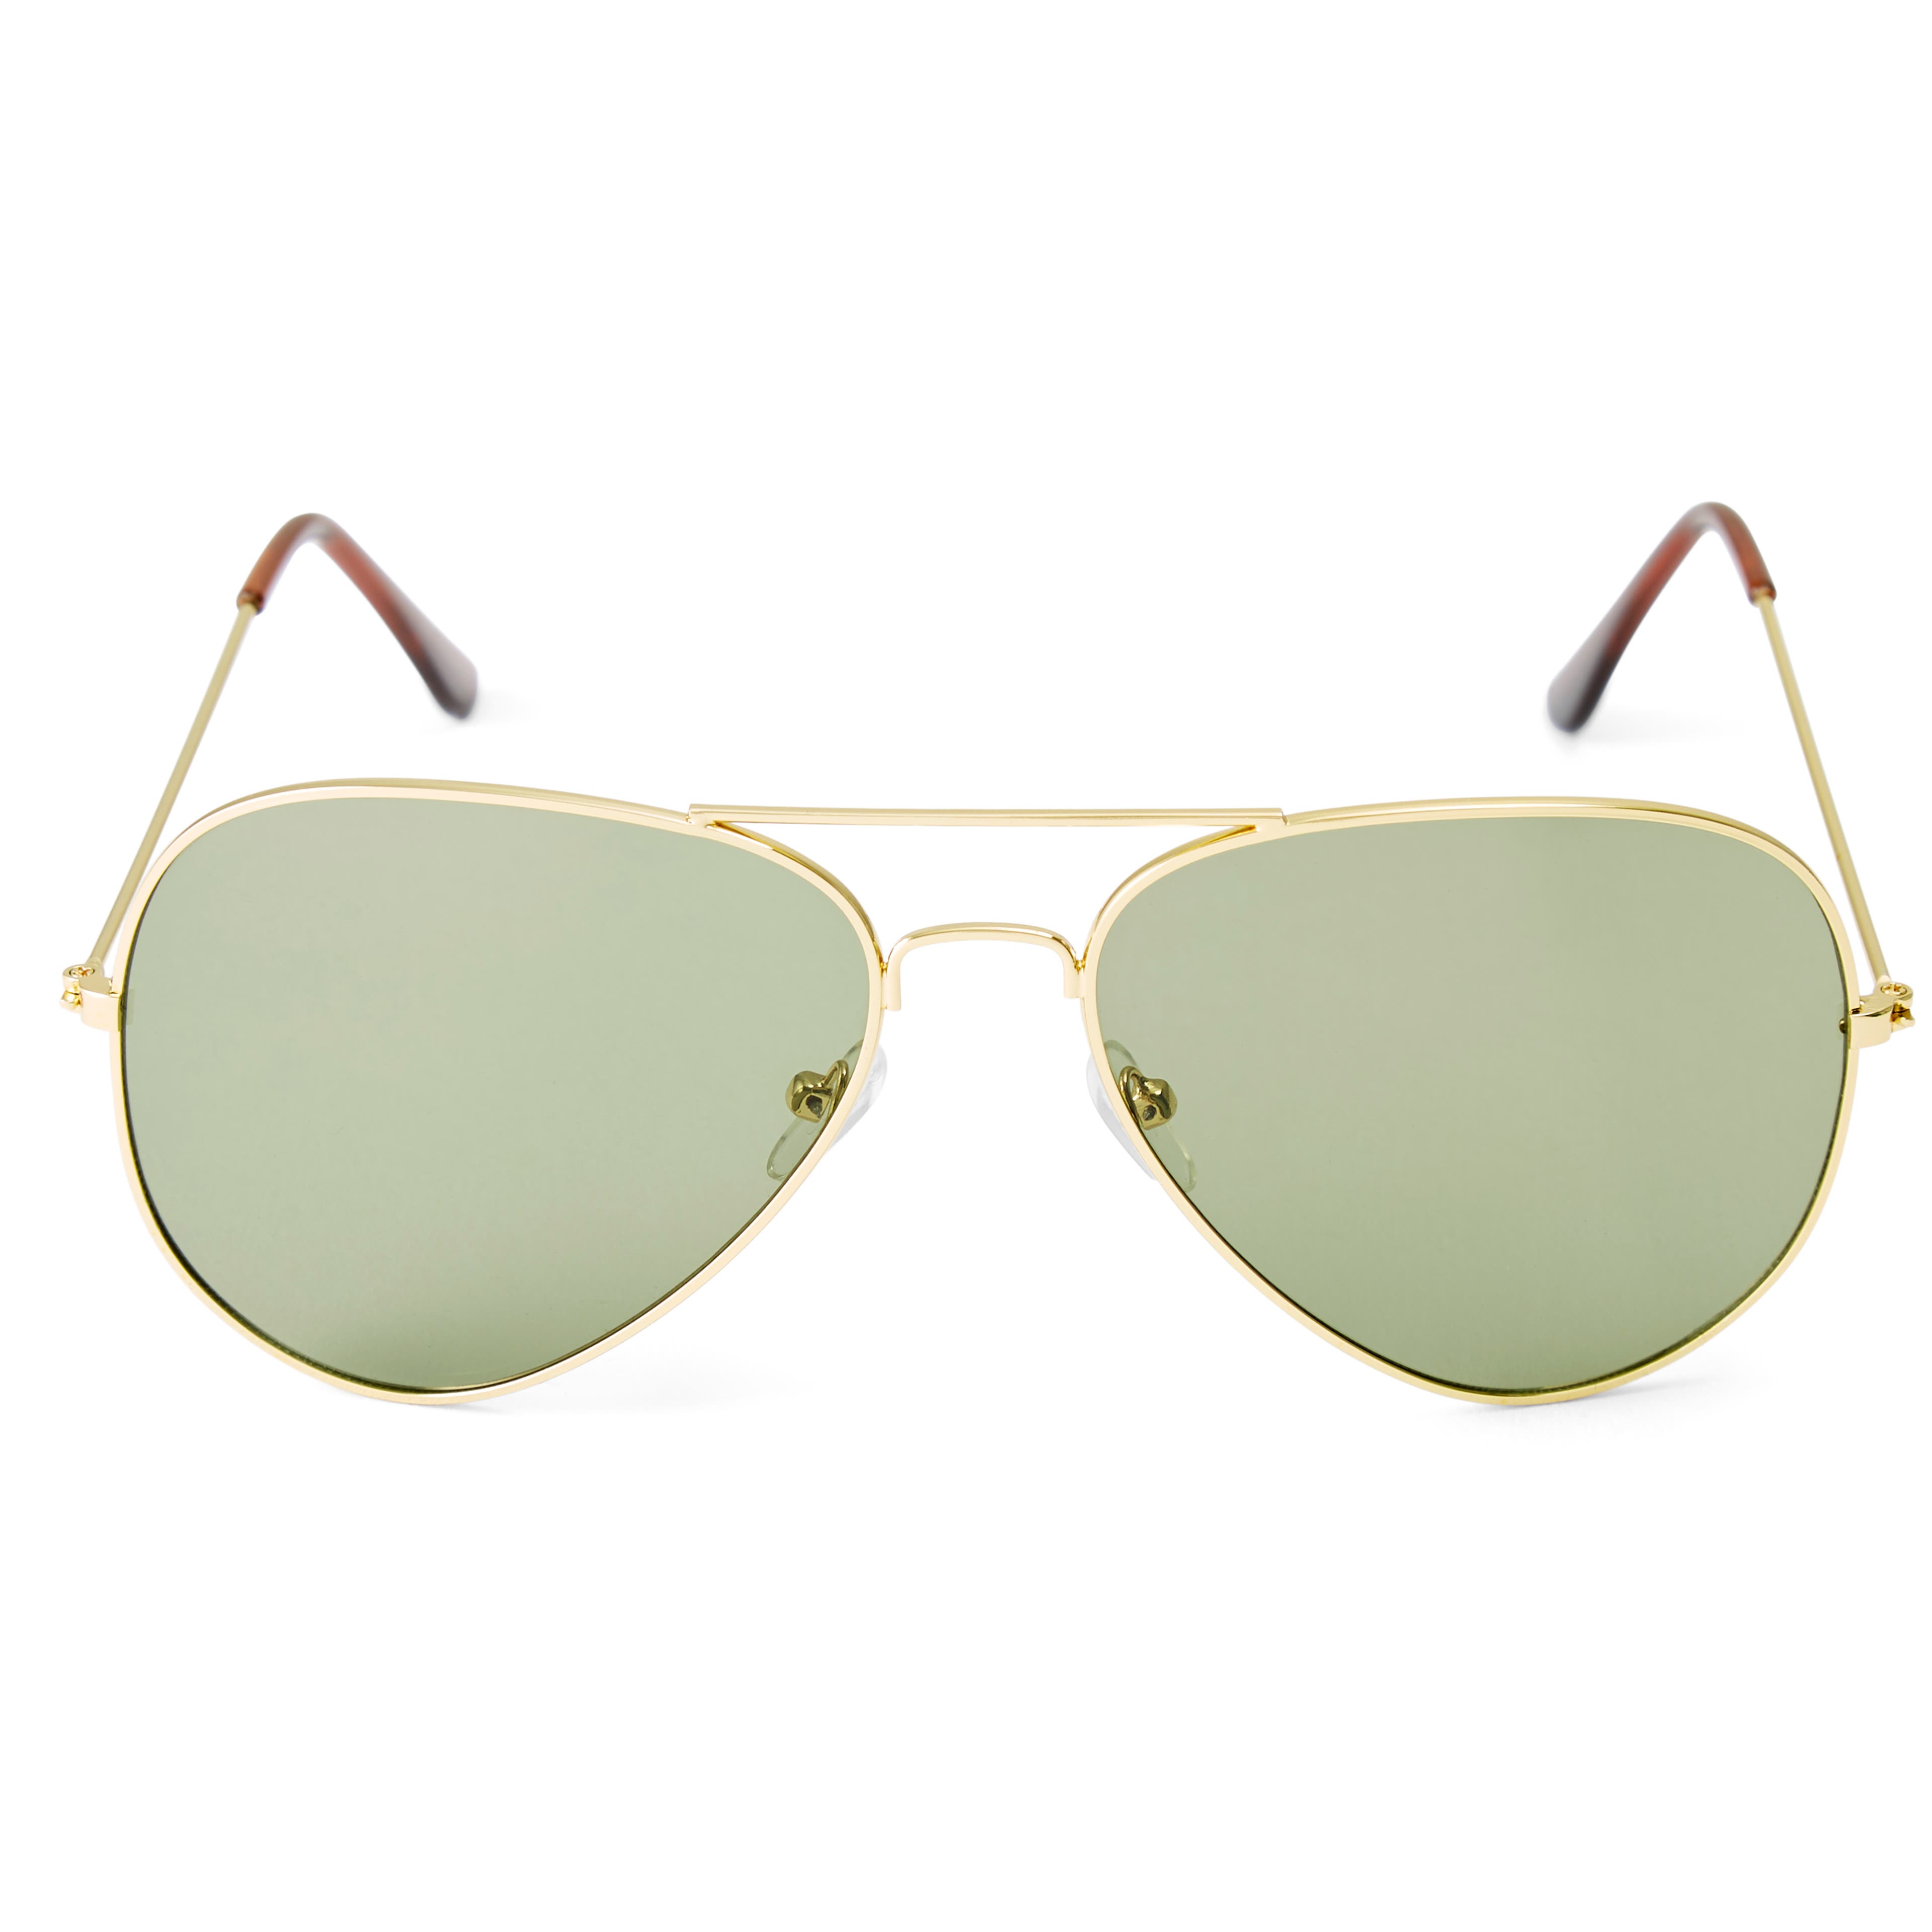 Авиаторски слънчеви очила със златисти рамки и зелени стъкла